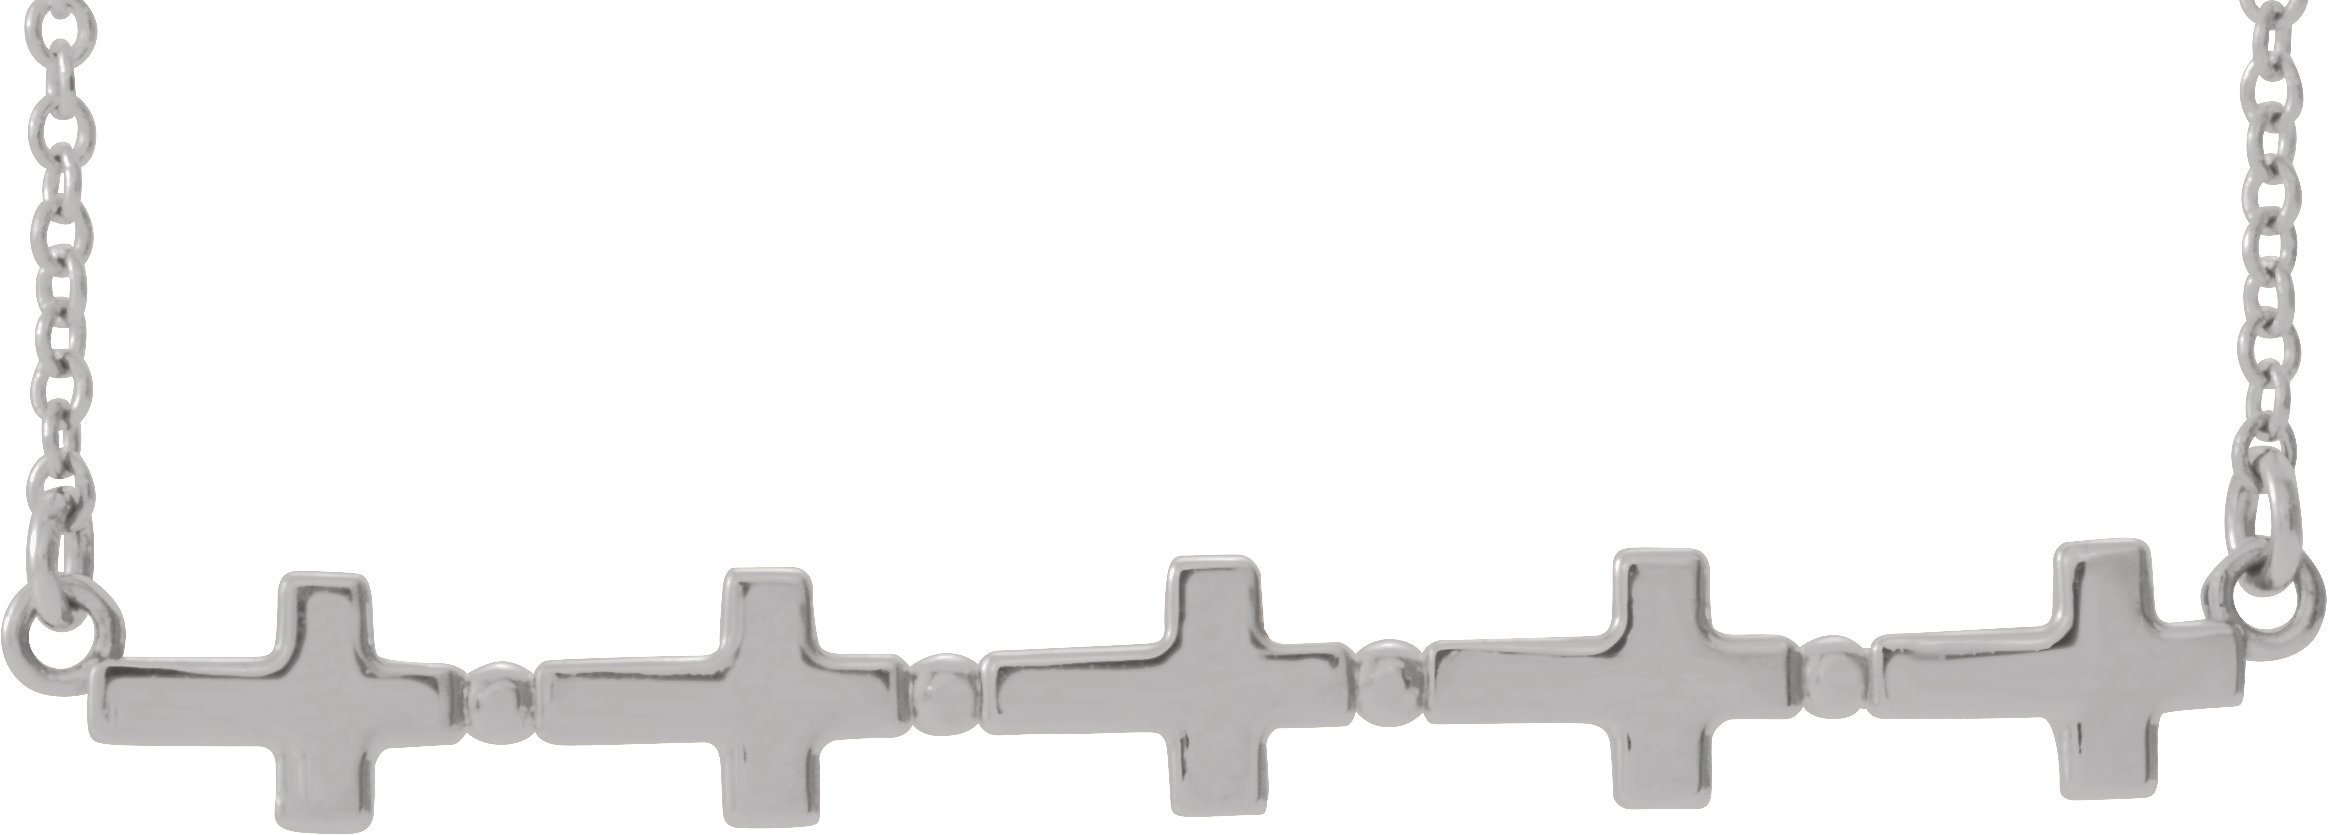 Platinum Sideways Cross Bar 18 inch Necklace Ref. 14647397